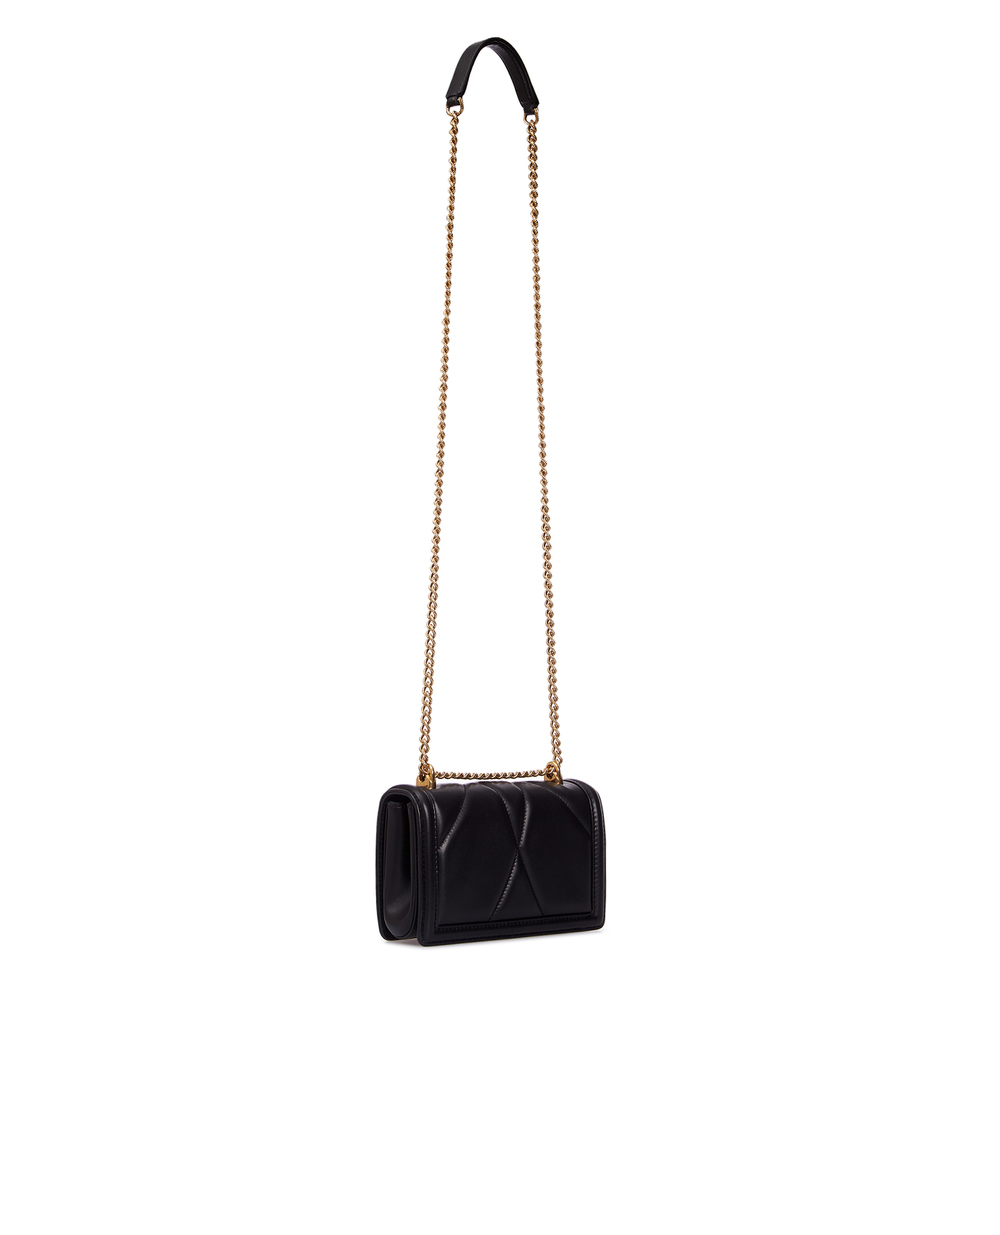 Кожаная сумка Devotion mini Dolce&Gabbana BB6880-AV967, черный цвет • Купить в интернет-магазине Kameron